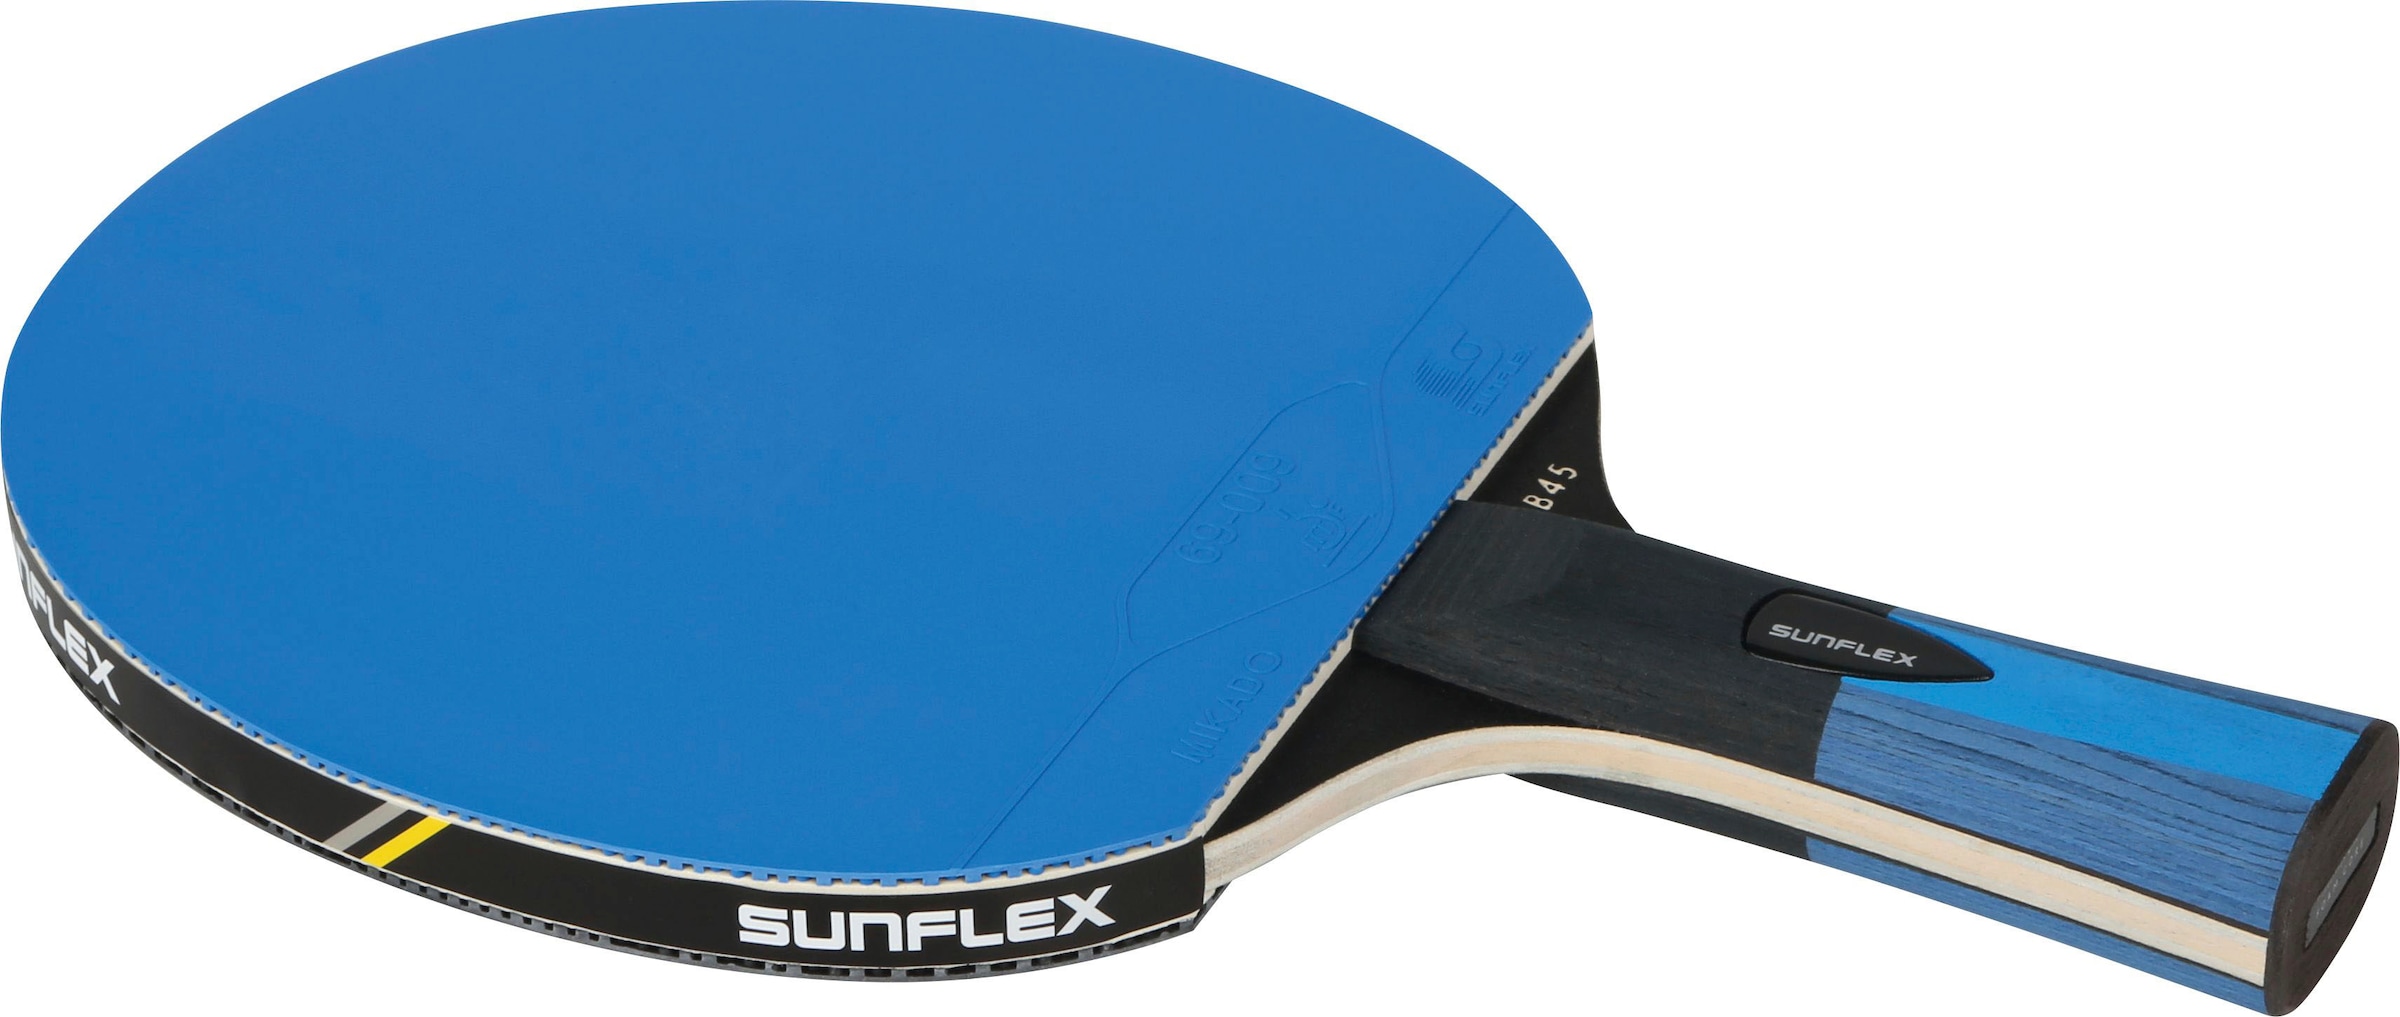 Tischtennisschläger »Color Comp B 45, Racket Table Tennis Bat«